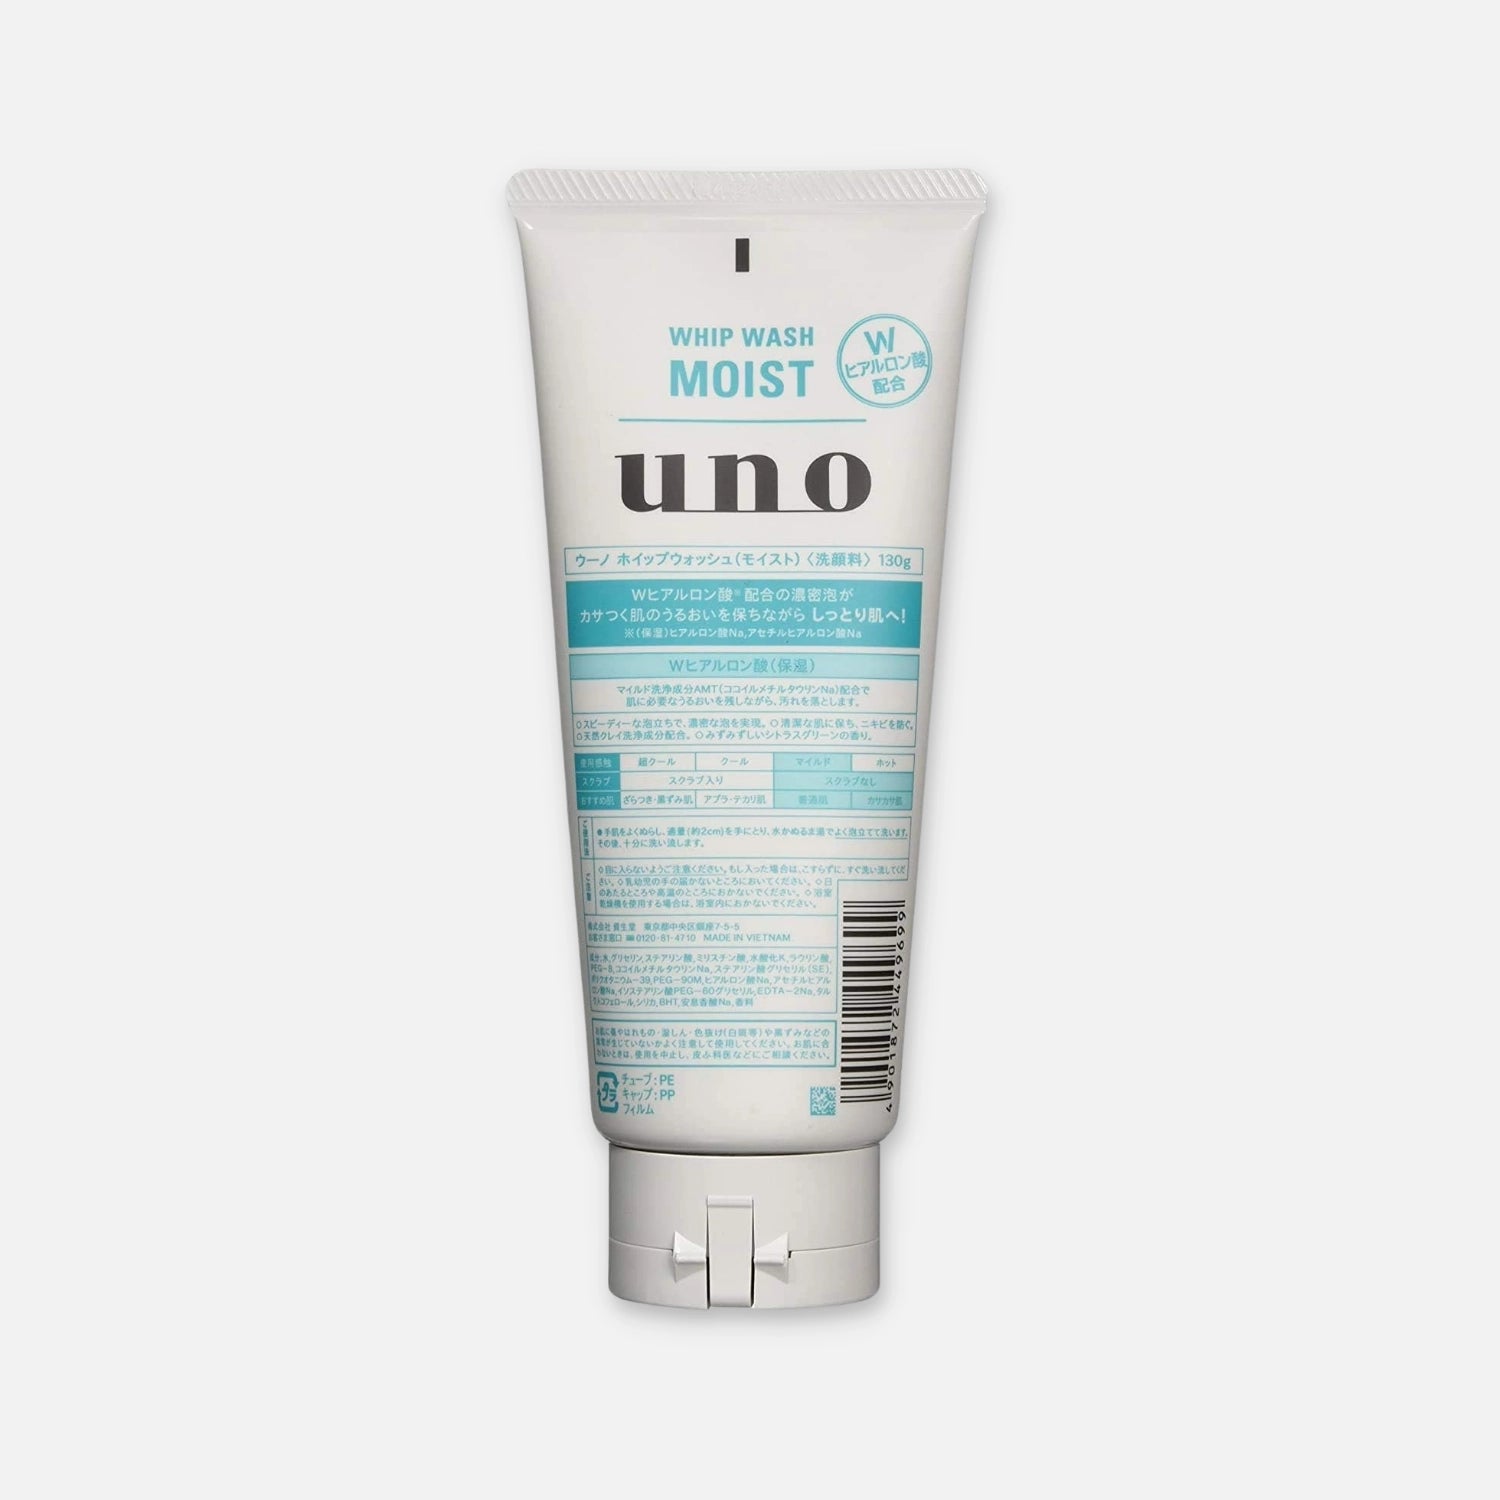 Shiseido Uno for Men Whip Wash Moist 130g - Buy Me Japan